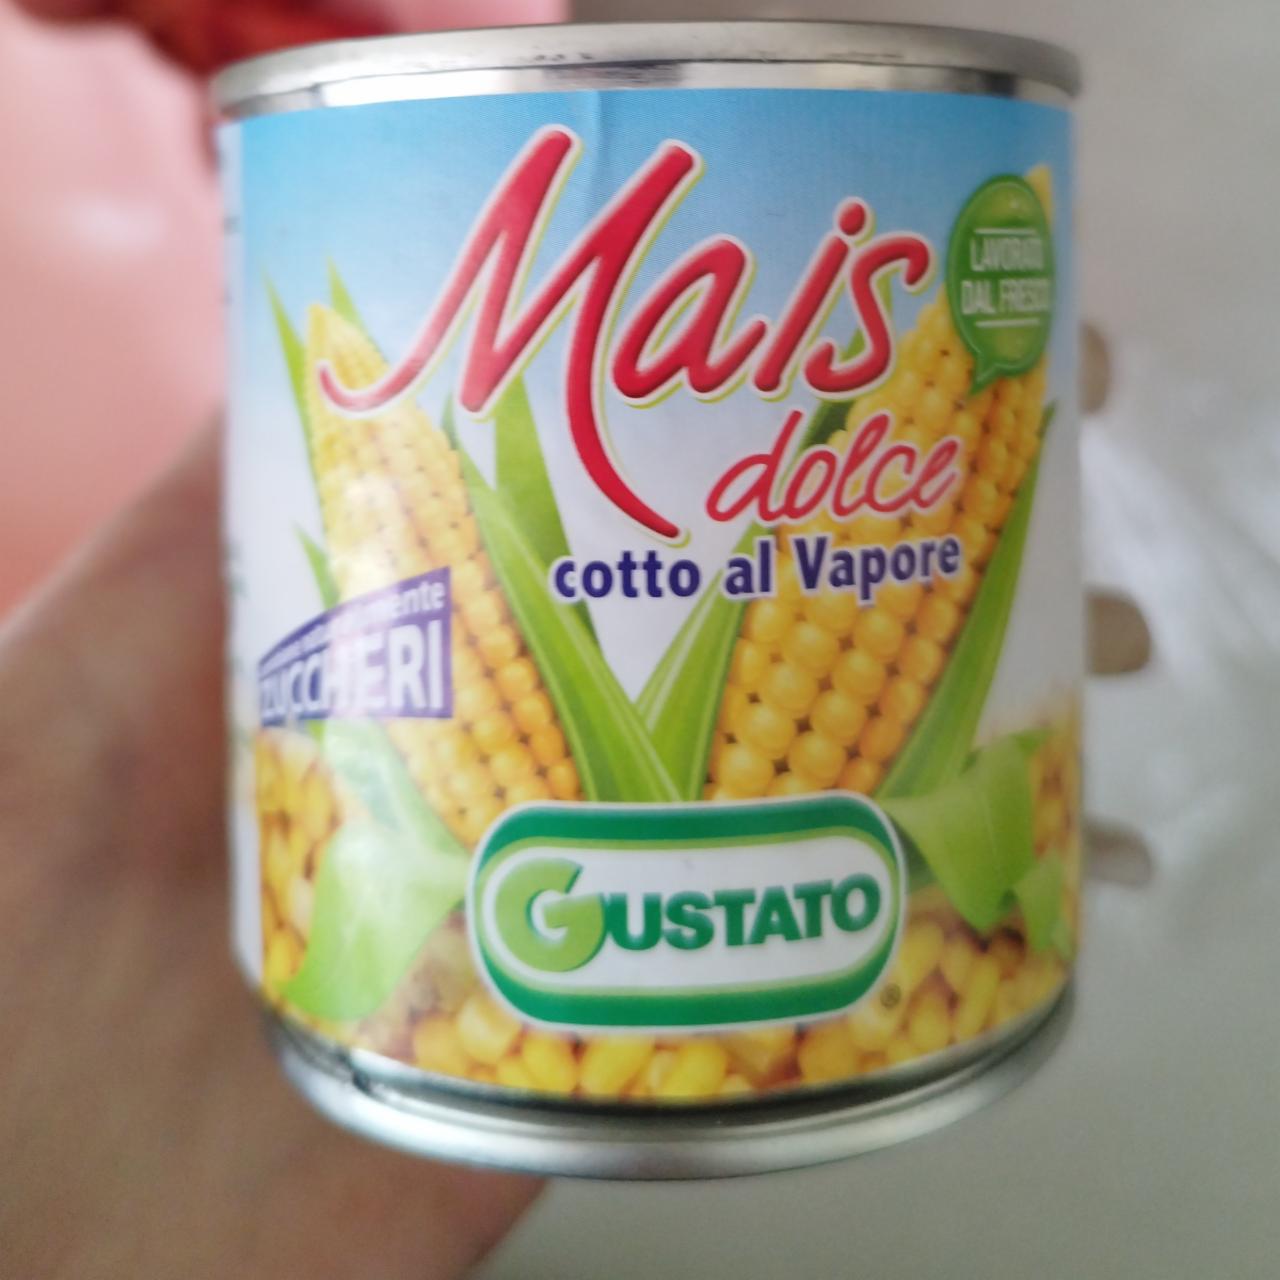 Фото - кукуруза консервированная mais dolce Gustato